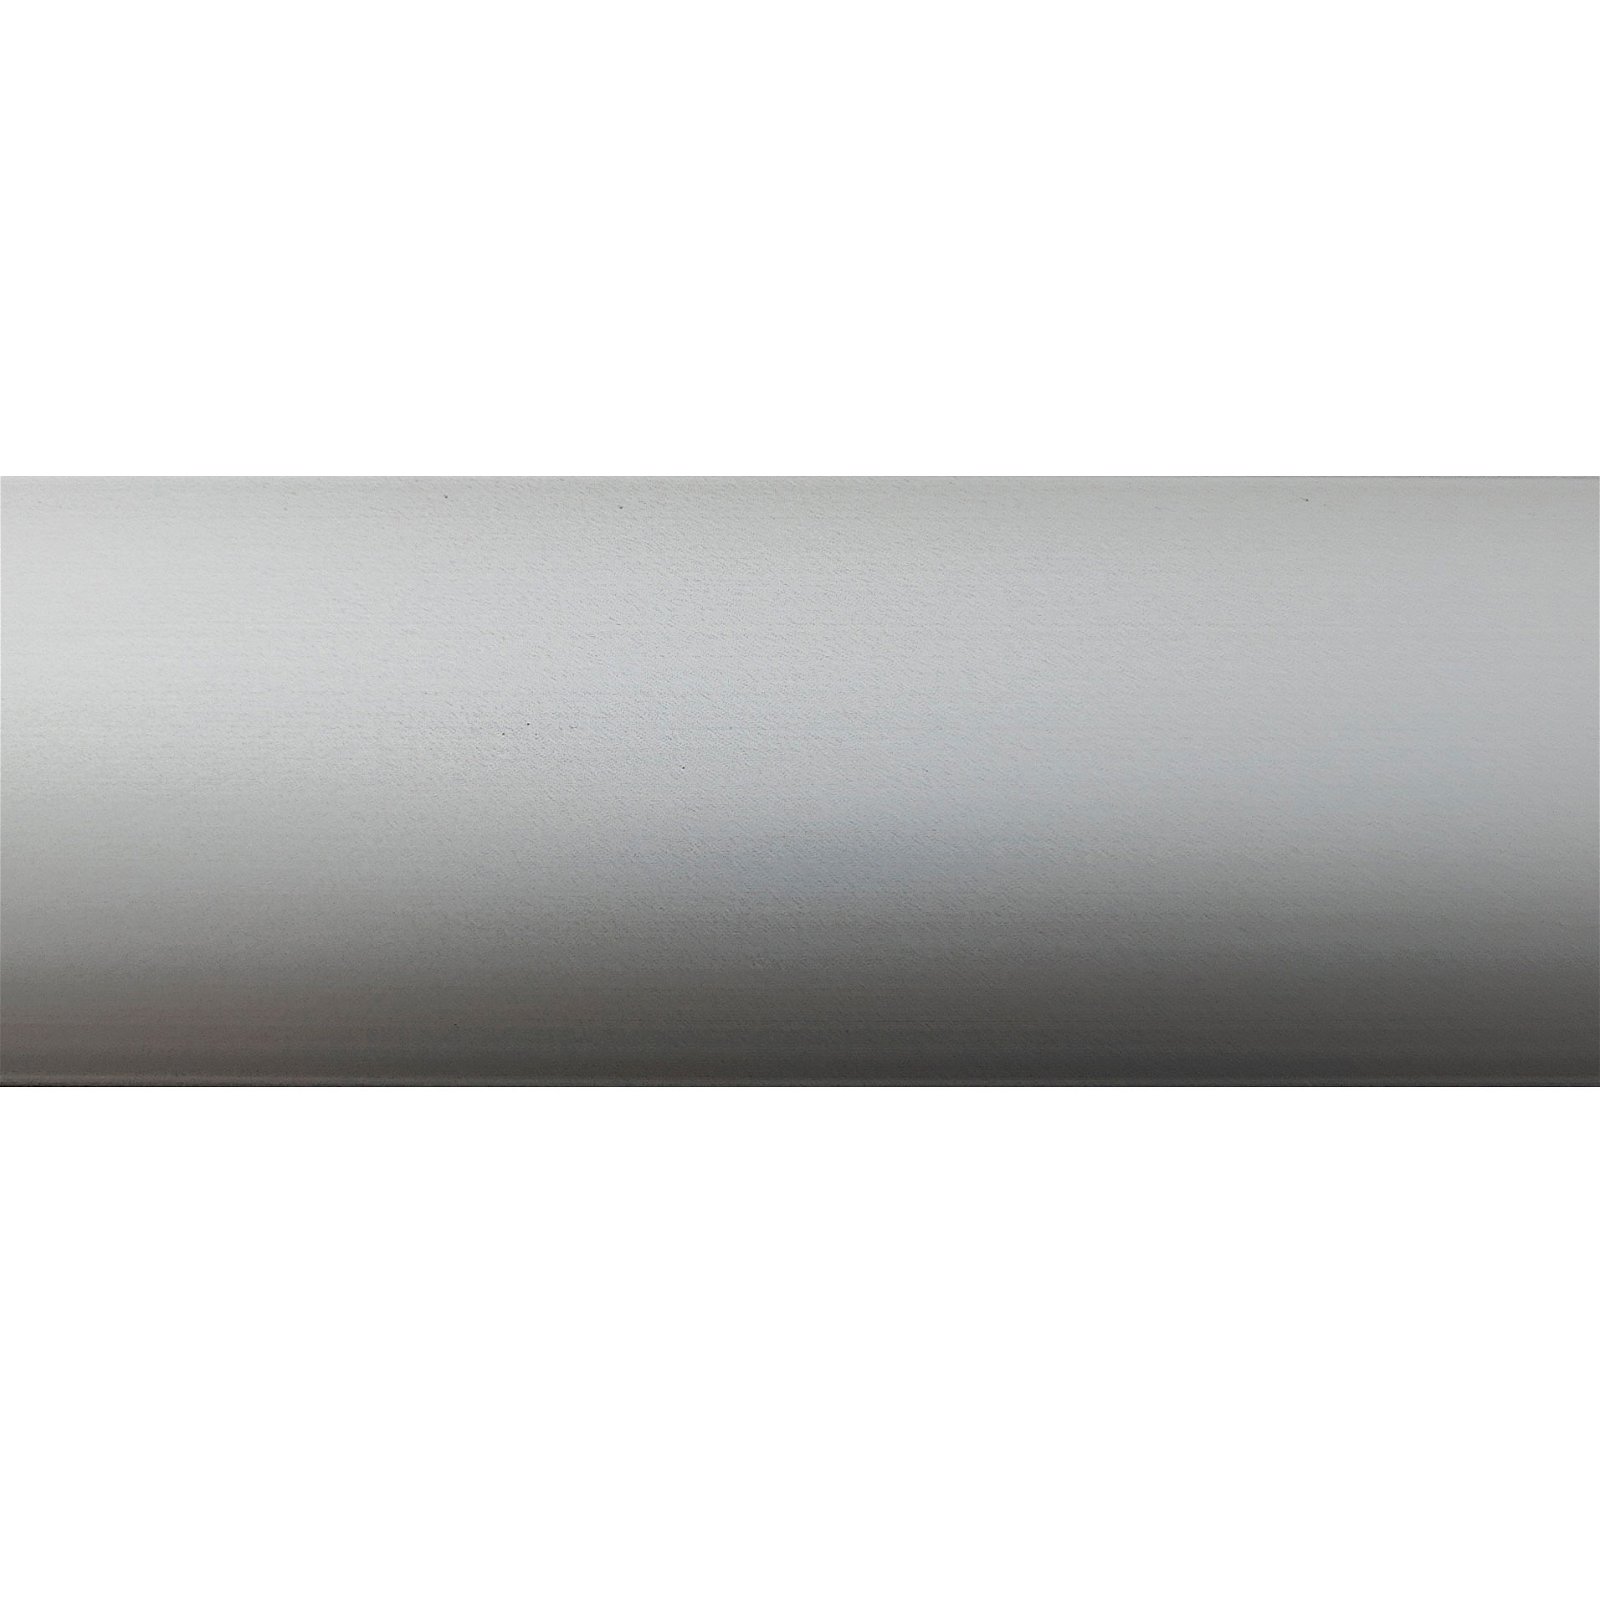 Selvklæbende buet overgangsprofil, 40 mm. x 900mm. - Mat alu 0433